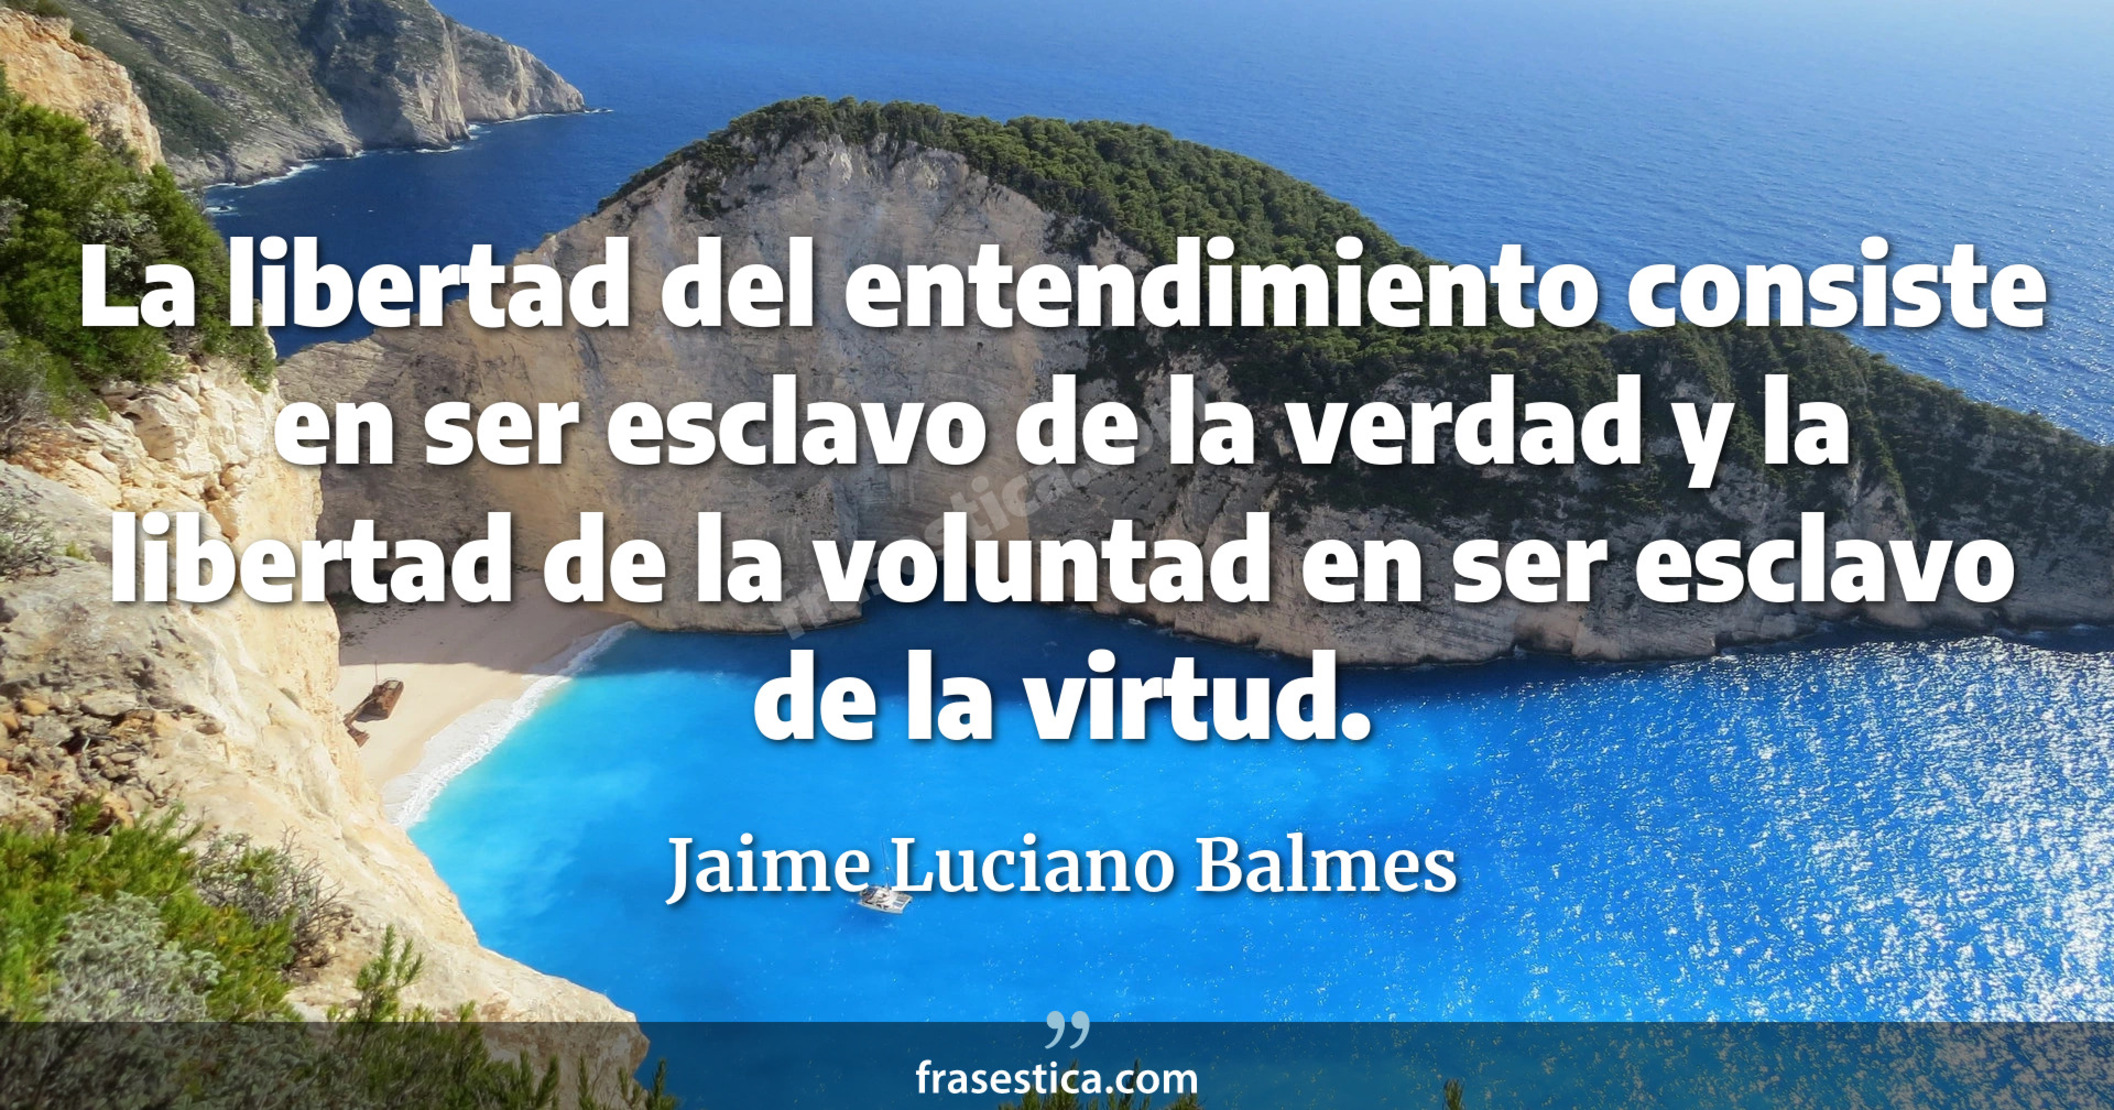 La libertad del entendimiento consiste en ser esclavo de la verdad y la libertad de la voluntad en ser esclavo de la virtud. - Jaime Luciano Balmes